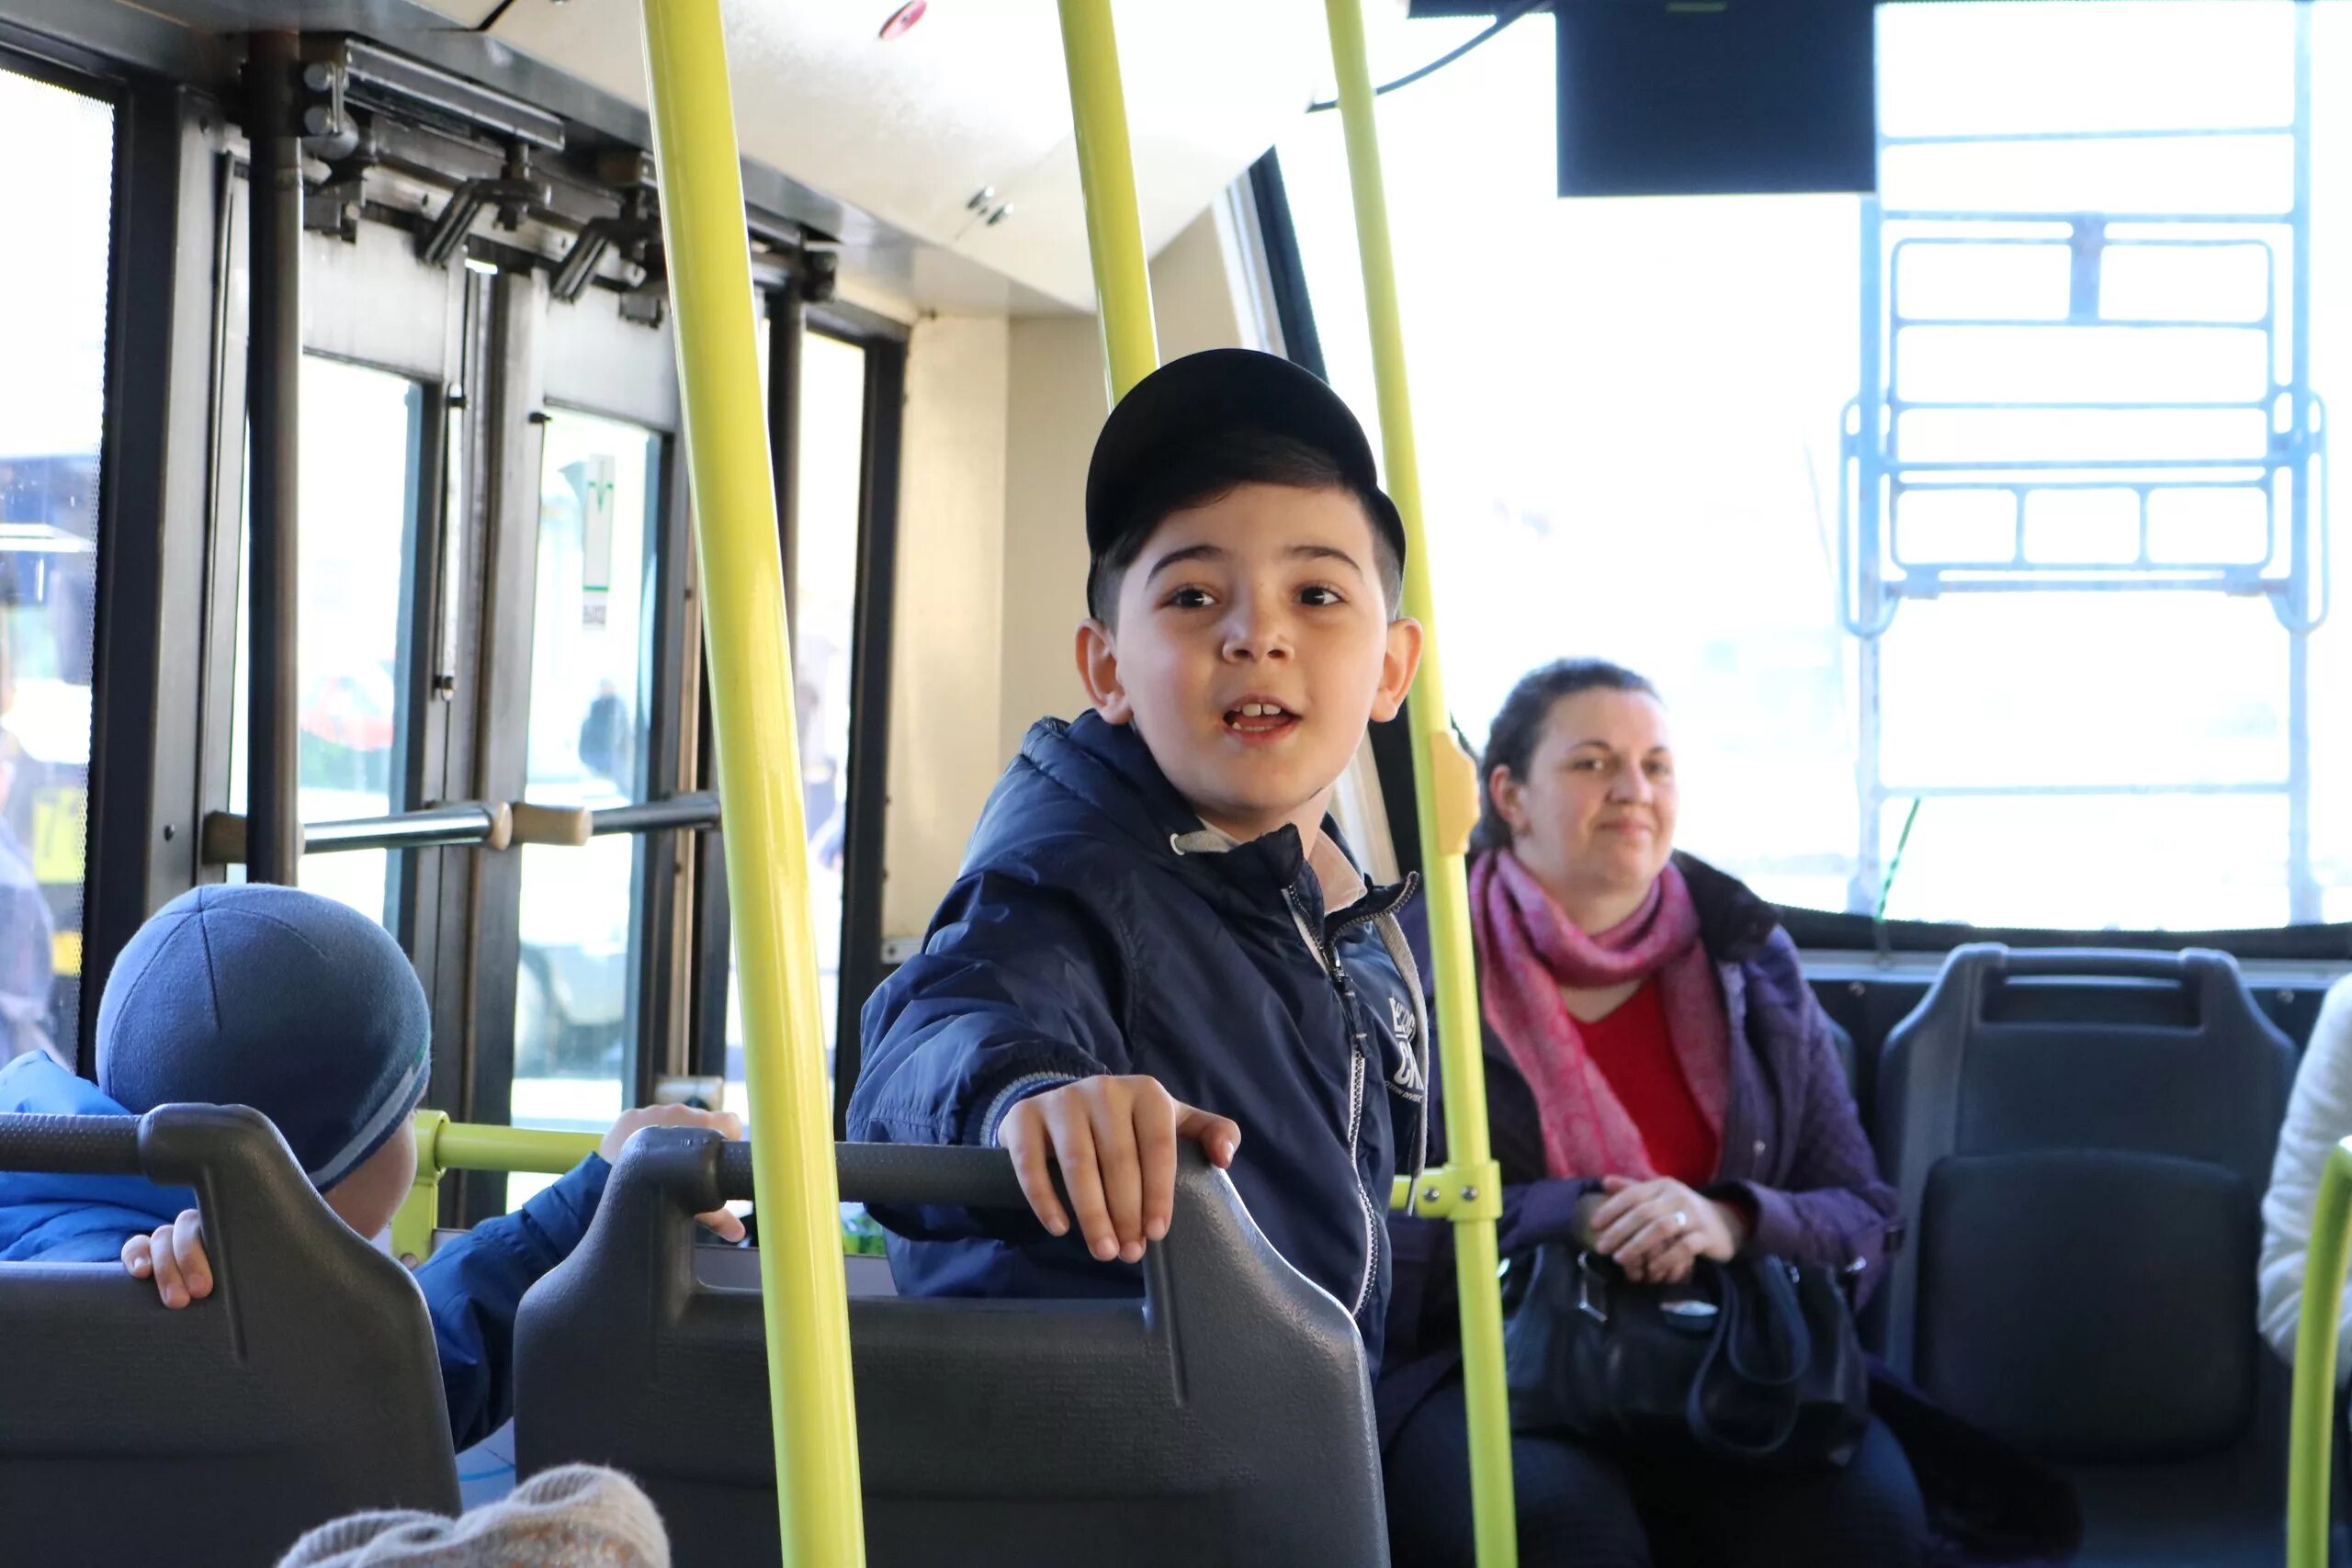 Пассажиры с детьми в автобусе. Автобус для детей. Общественный транспорт для детей. Школьники в автобусе. Подростки в автобусе.